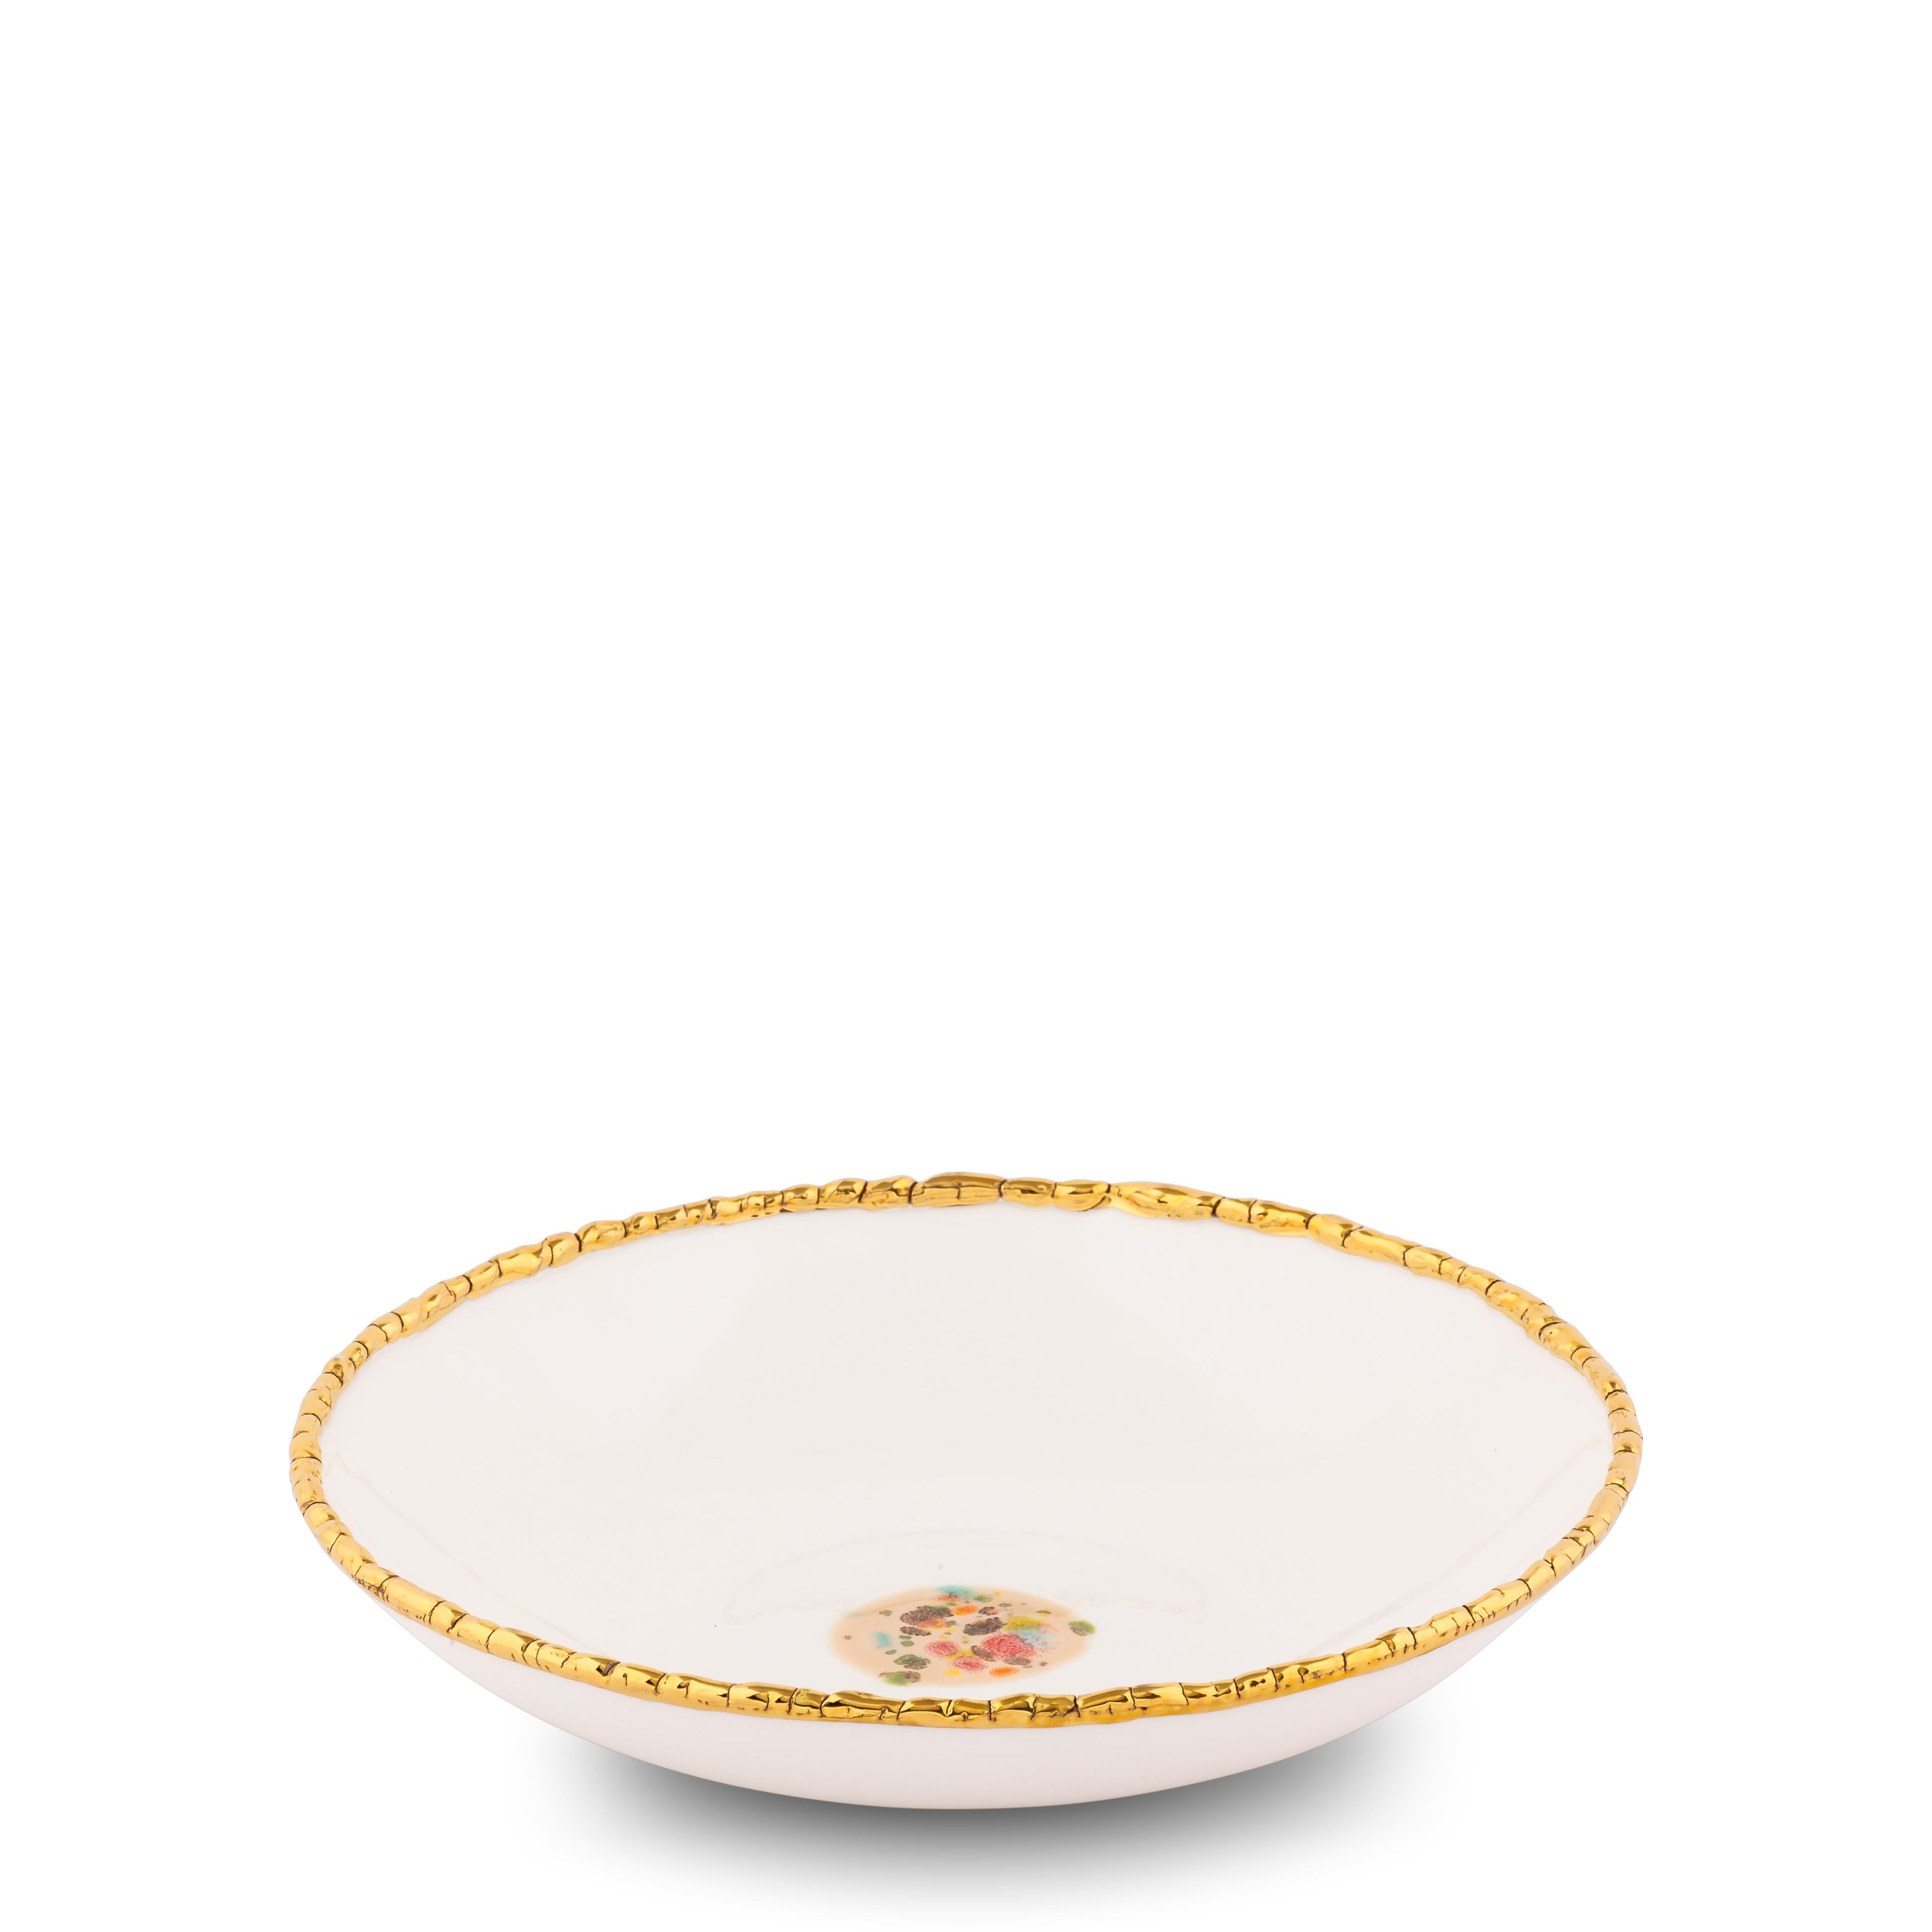 Fabriquées à la main en Italie à partir de la meilleure porcelaine, ces assiettes creuses à bord craquelé blanc de la collection Chestnut ont un bord craquelé doré original qui met en valeur l'élégante surface blanche avec le décor sableux en